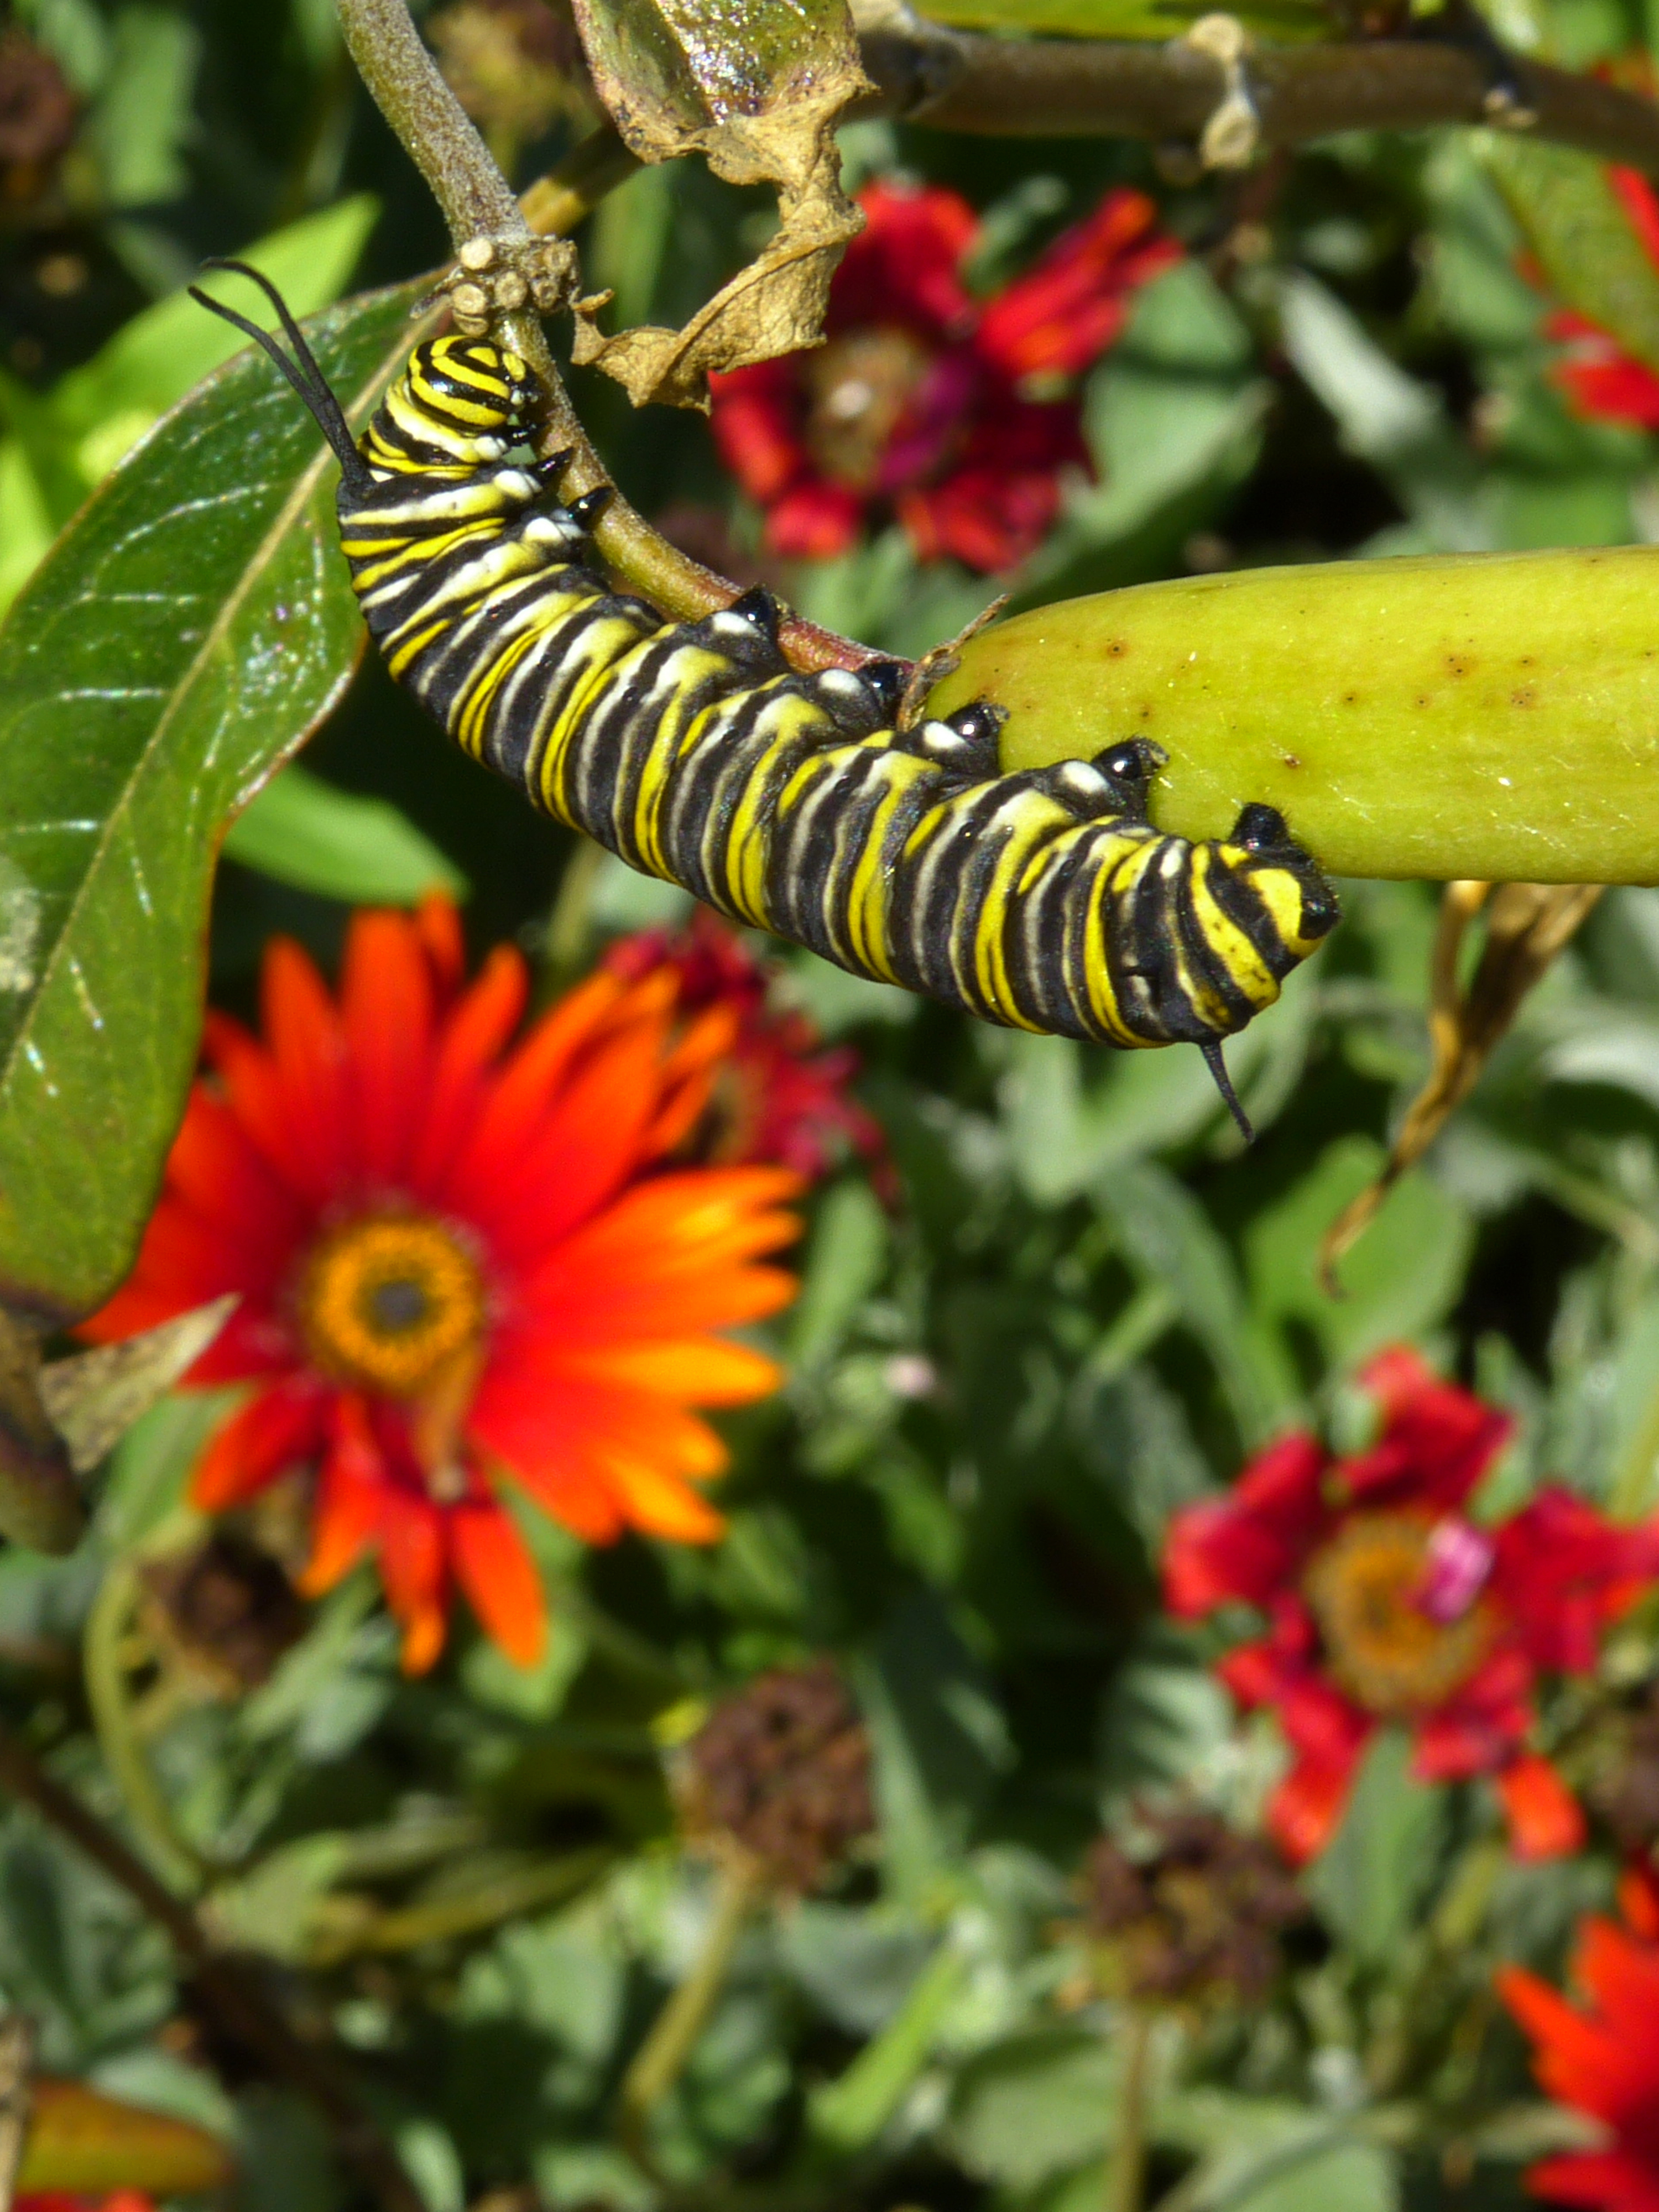 Monarch butterfly caterpillar  -  San Diego Botanic Garden, Encinitas, California  